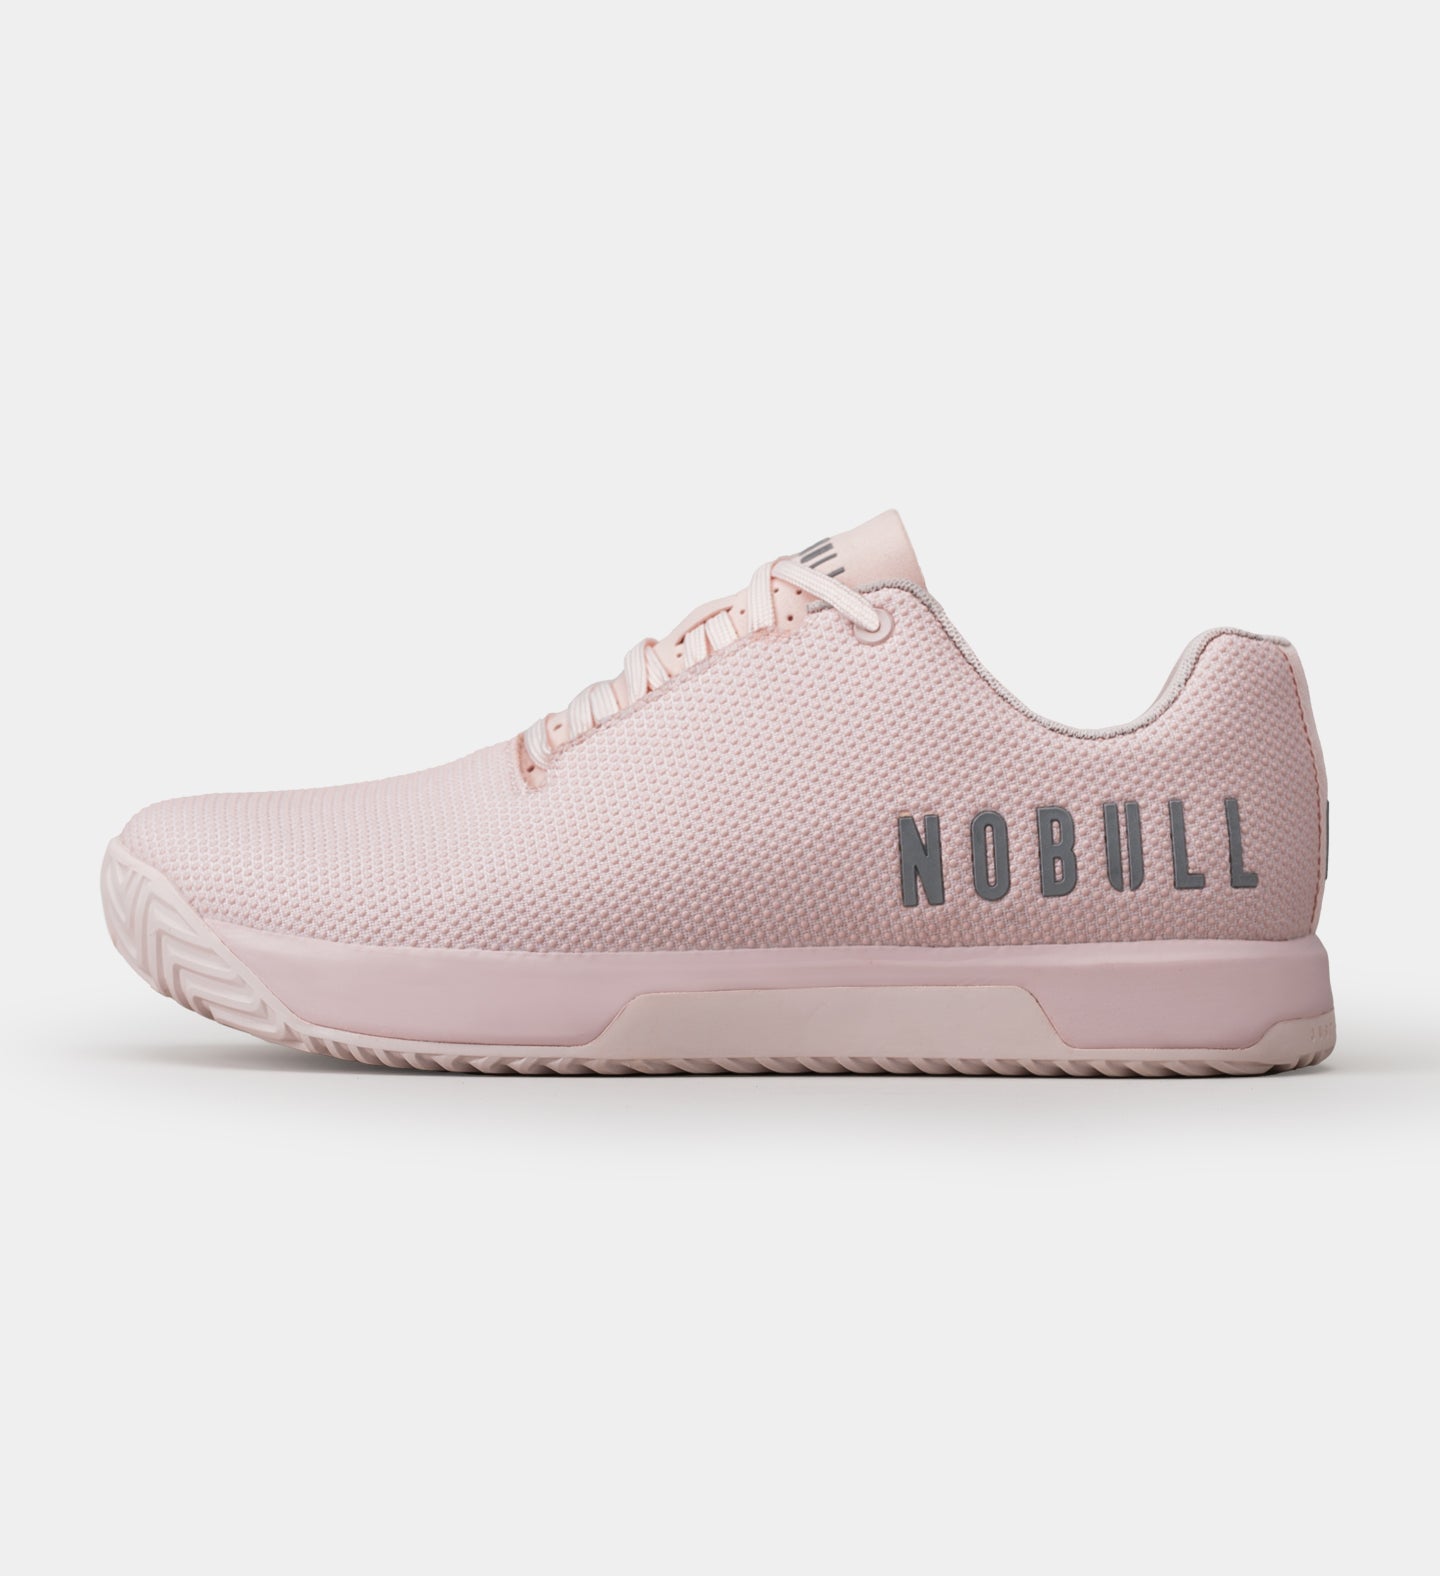 NOBULL - Women's Court Trainer - White - Size 7.5